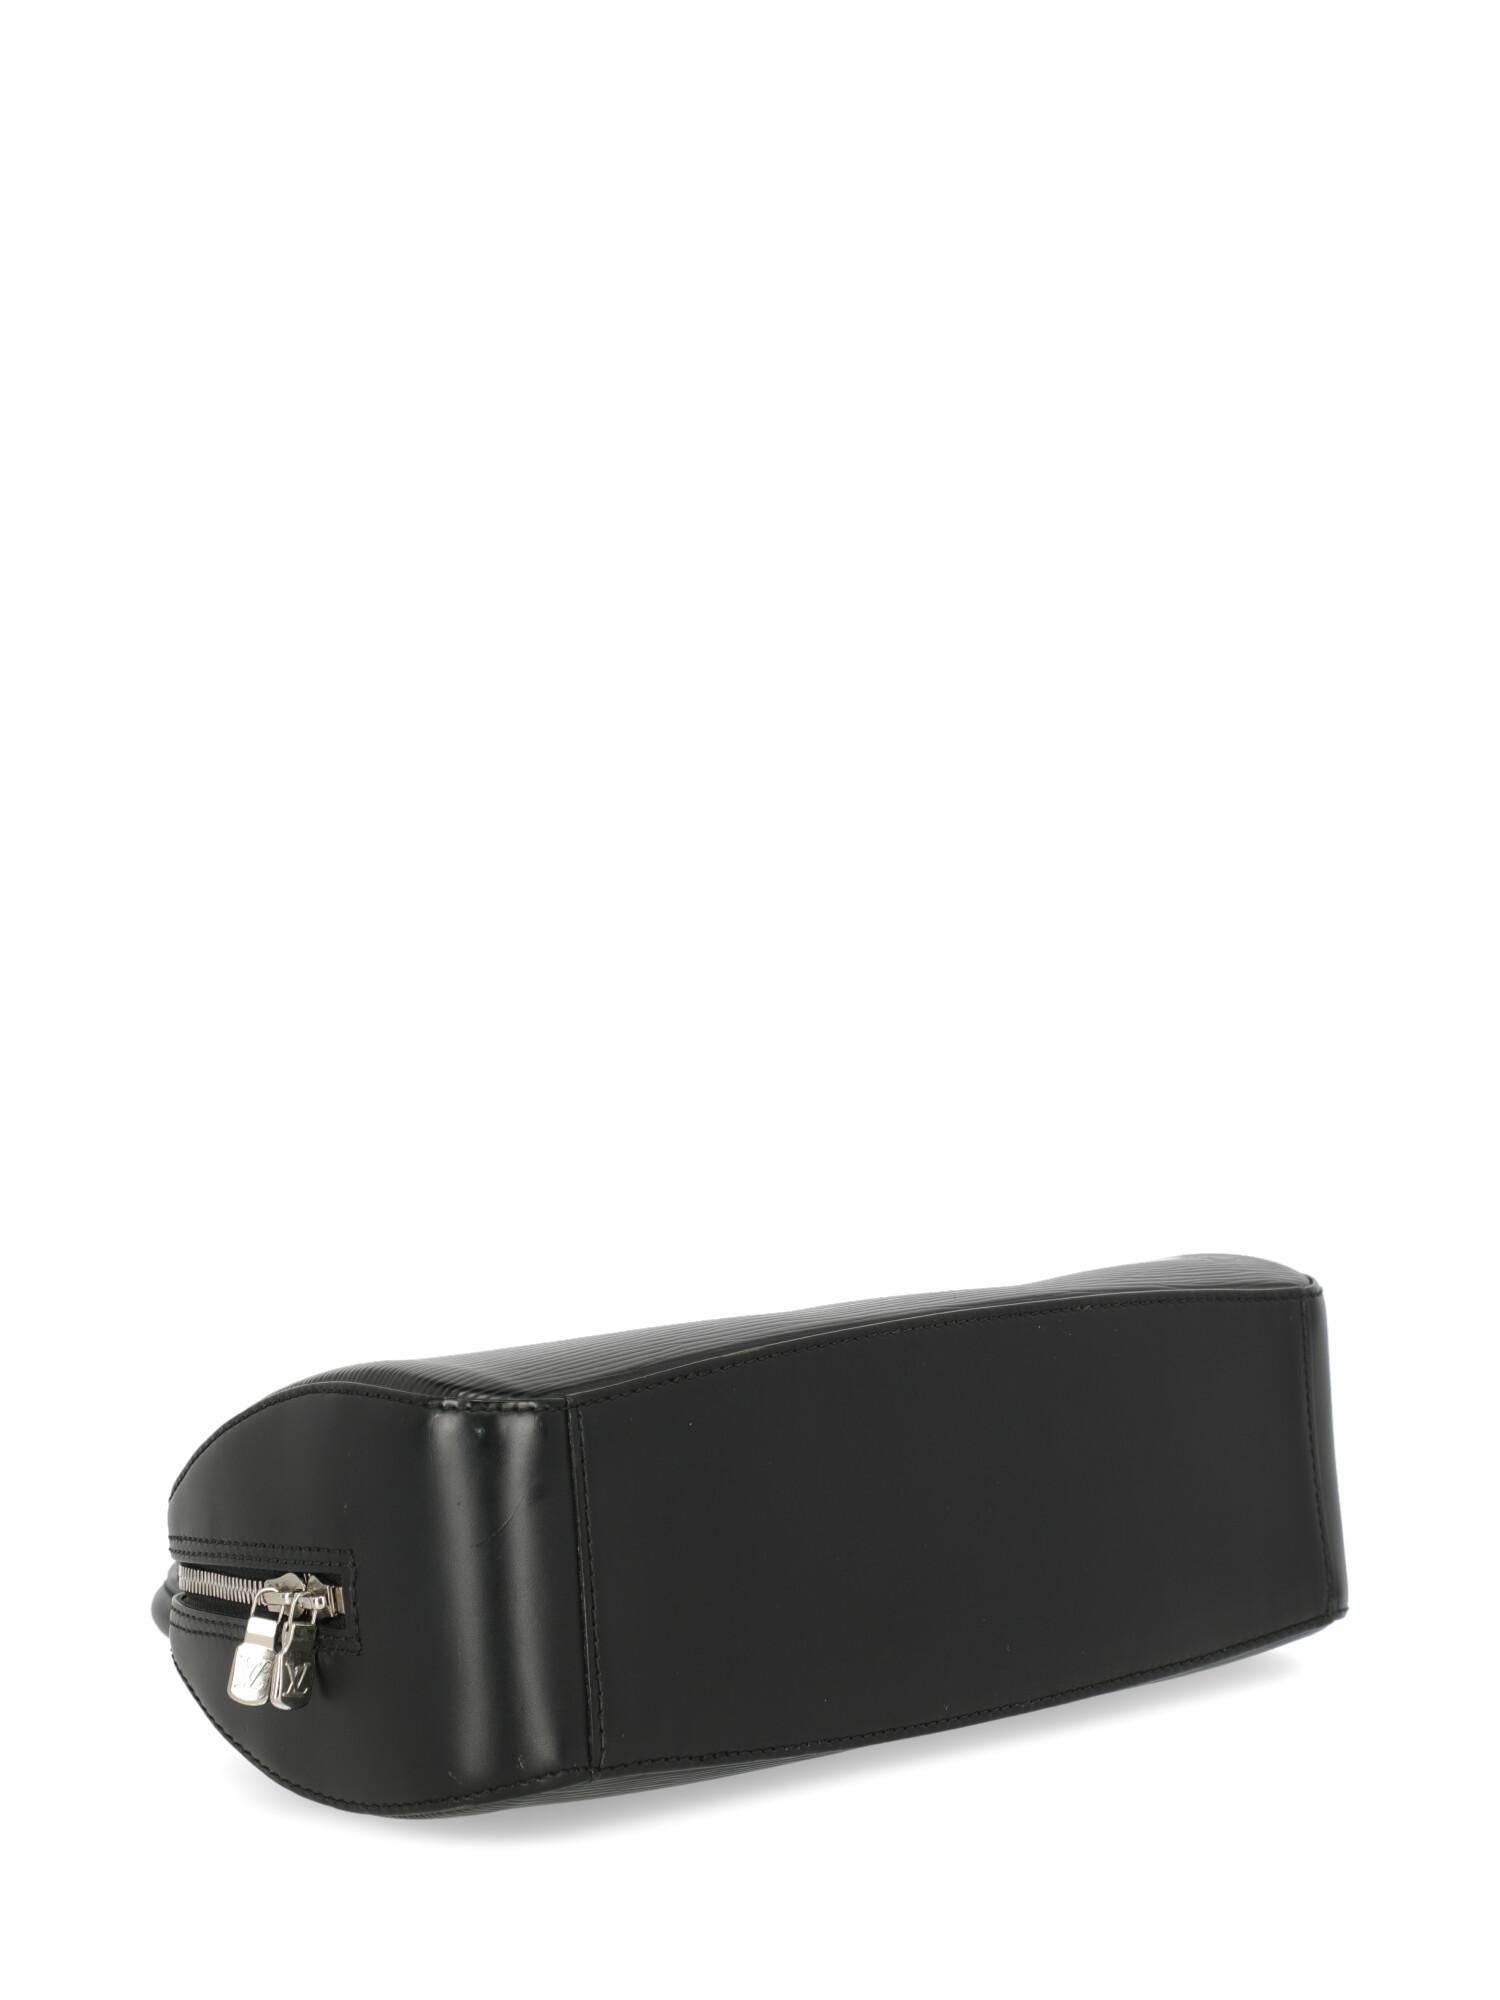 Louis Vuitton Women's Handbag Black Leather For Sale 1